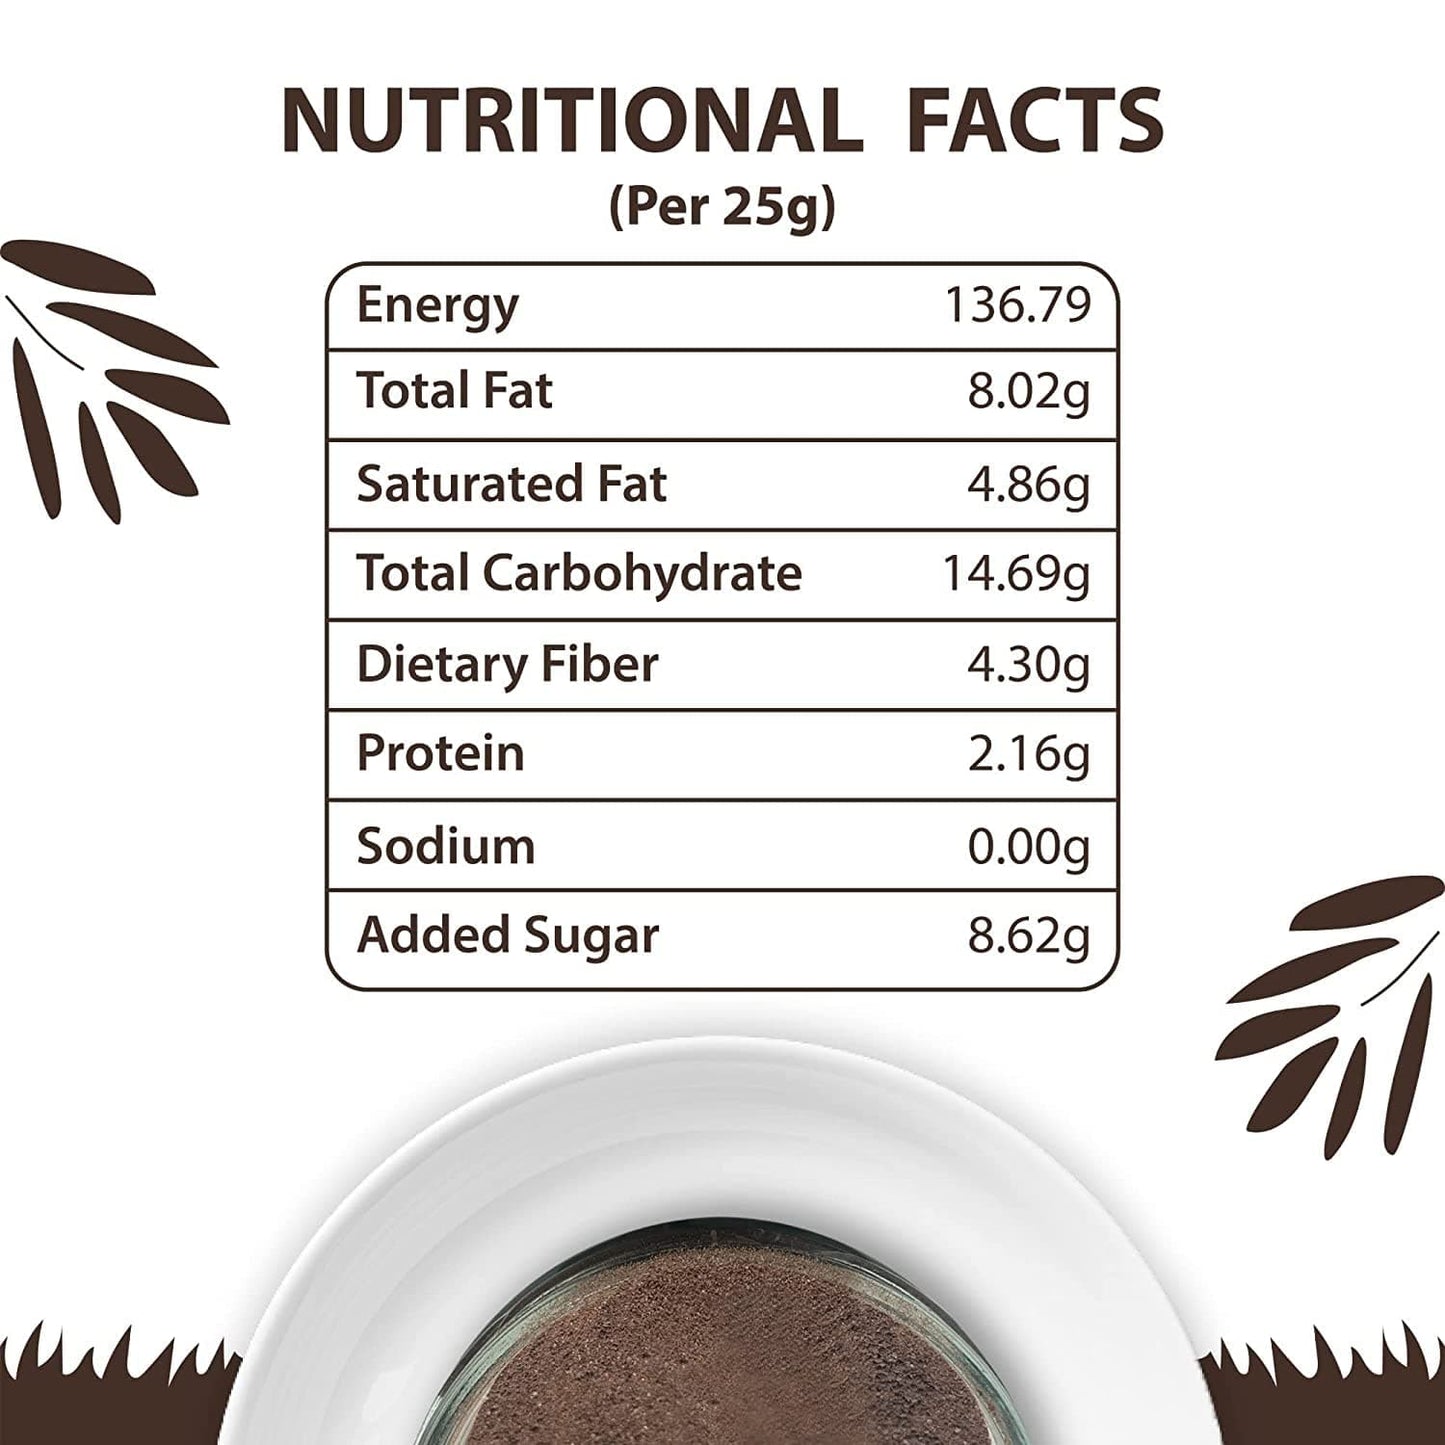 Darkins 57% Hot Chocolate Mix Classic Blend | Unrefined Cane Sugar |100g Each Pack of 2